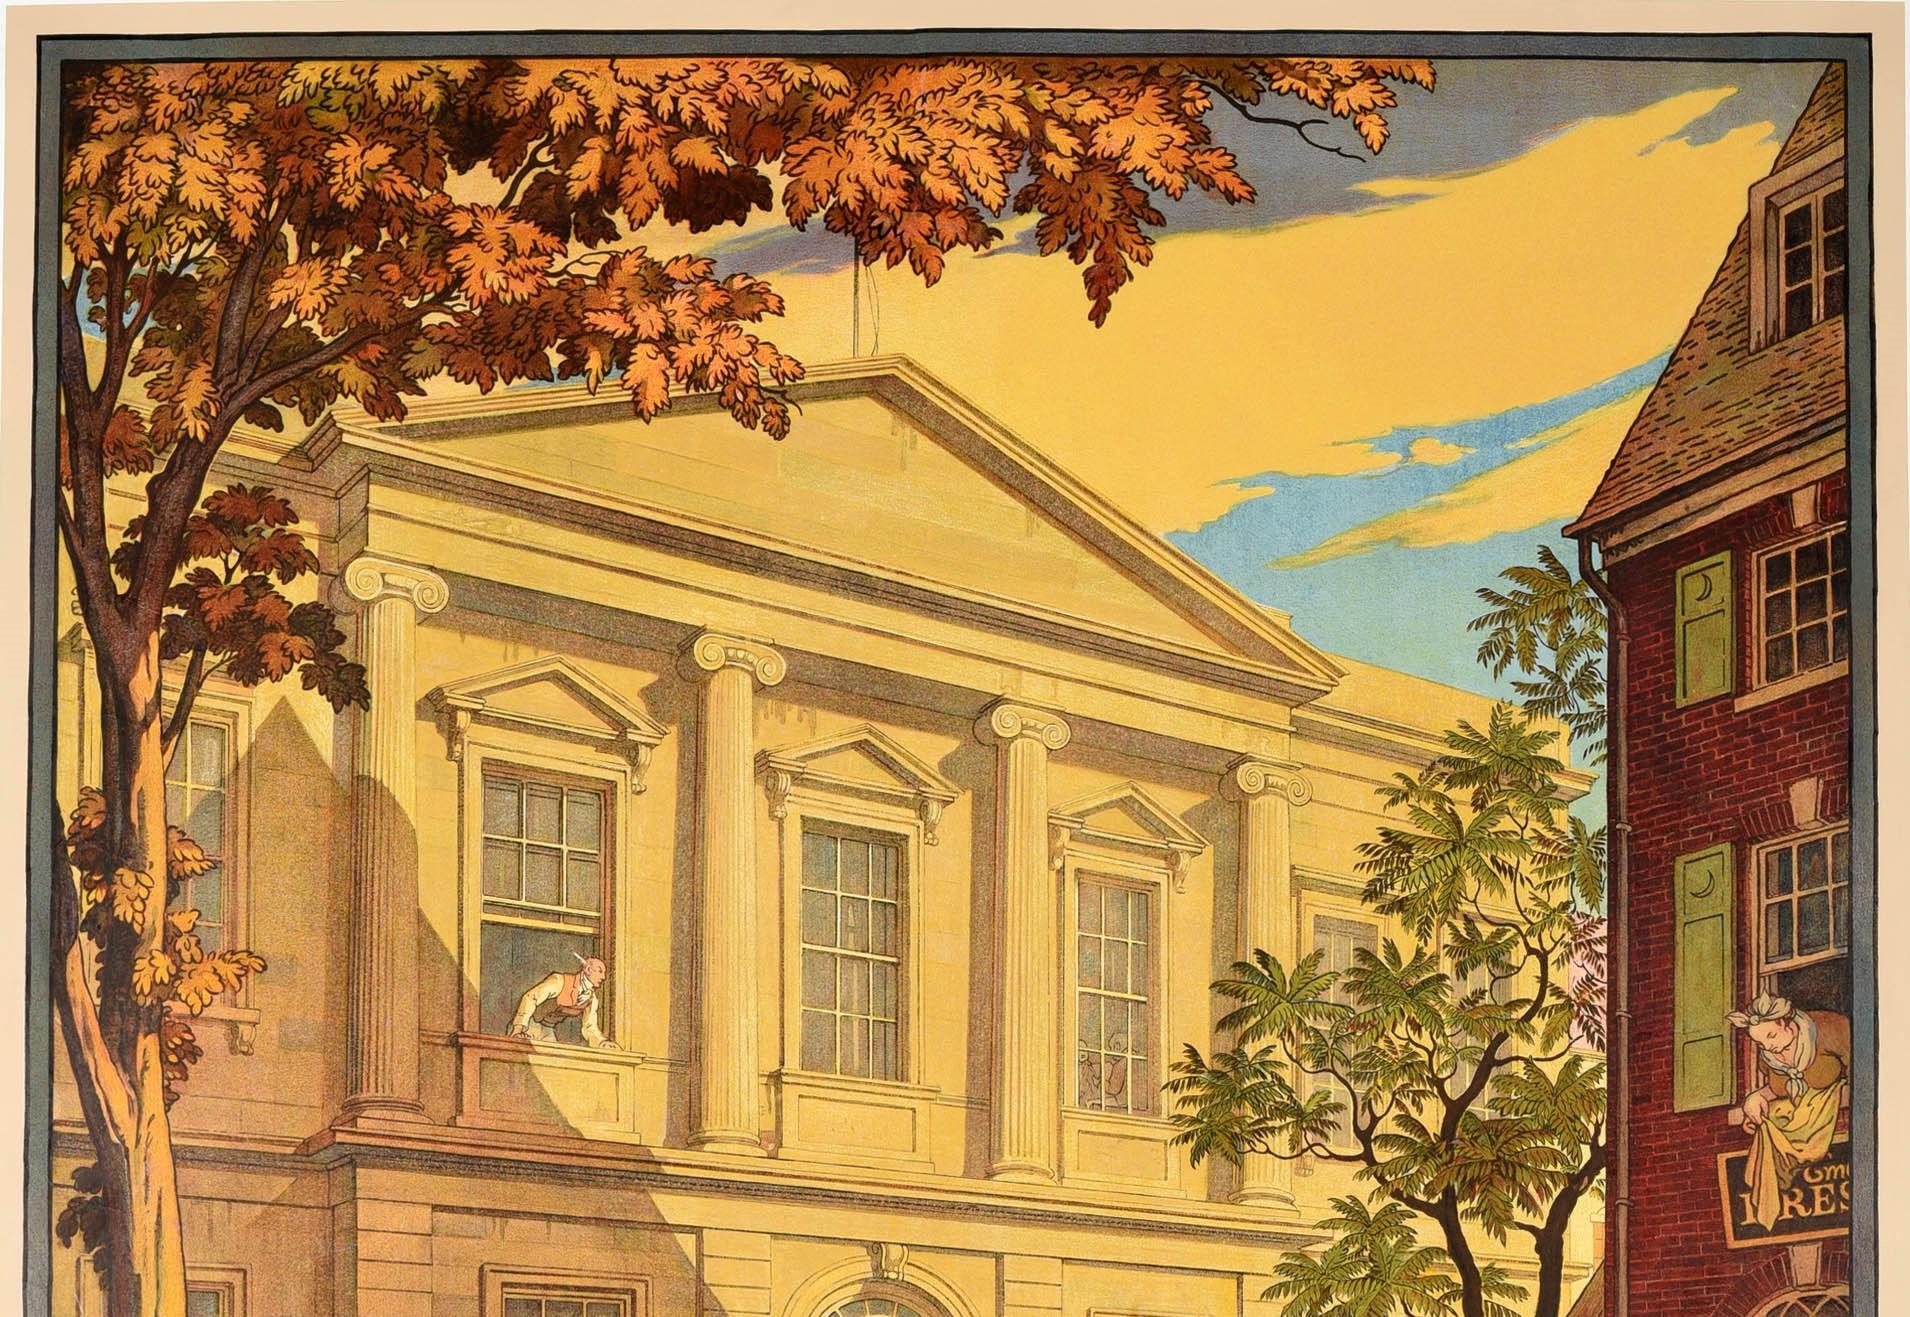 Affiche publicitaire originale d'époque pour le Metropolitan Museum of Art American Wing présentant une superbe illustration de Thomas Maitland Cleland (1880-1964) d'une journée ensoleillée devant la grande façade de l'American Wing avec des